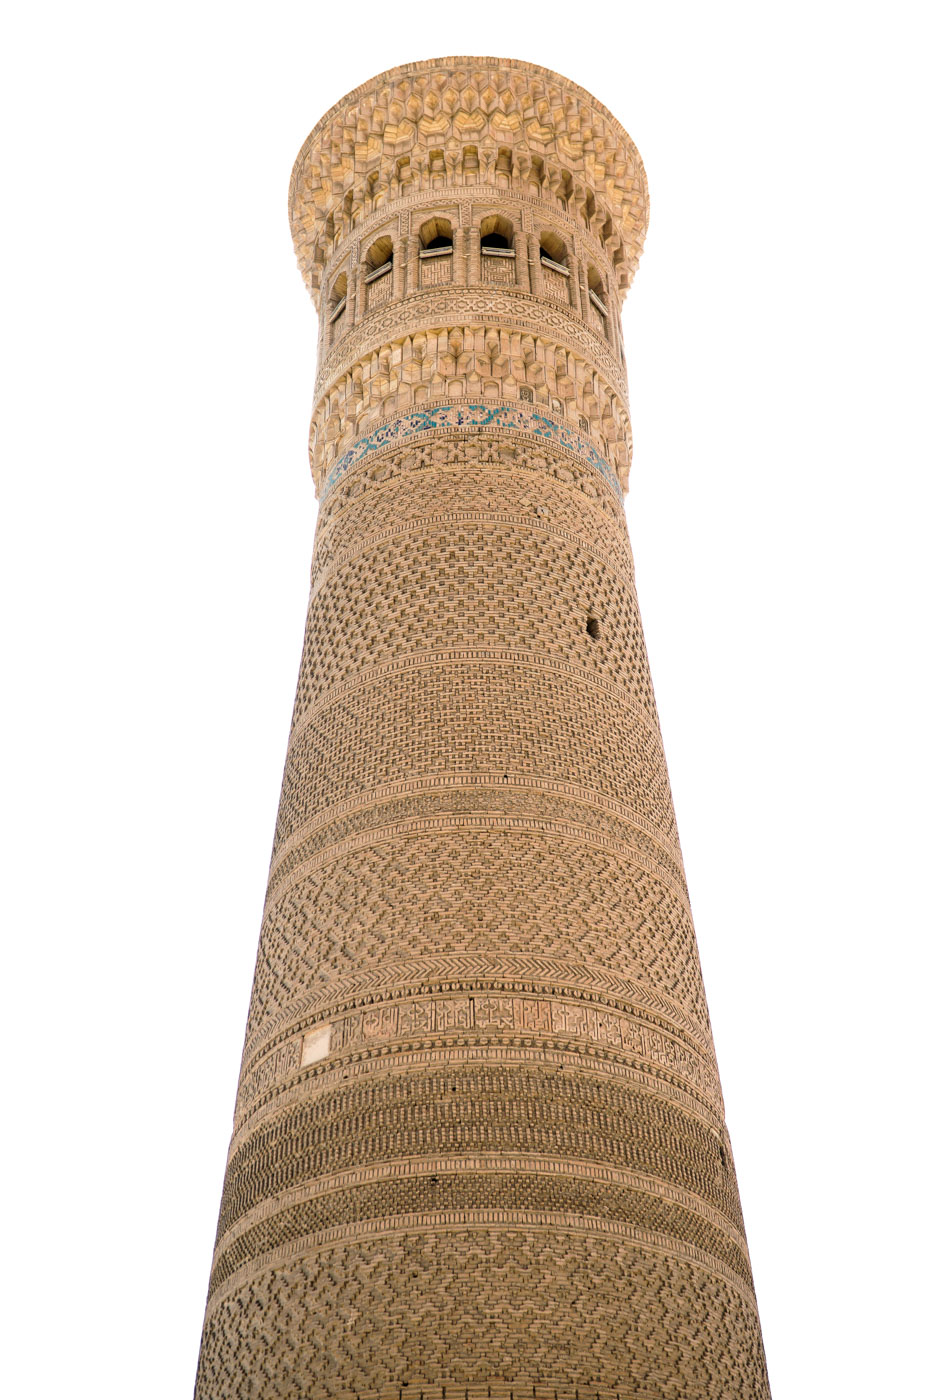 Minarete em Bukhara no Uzbequistão